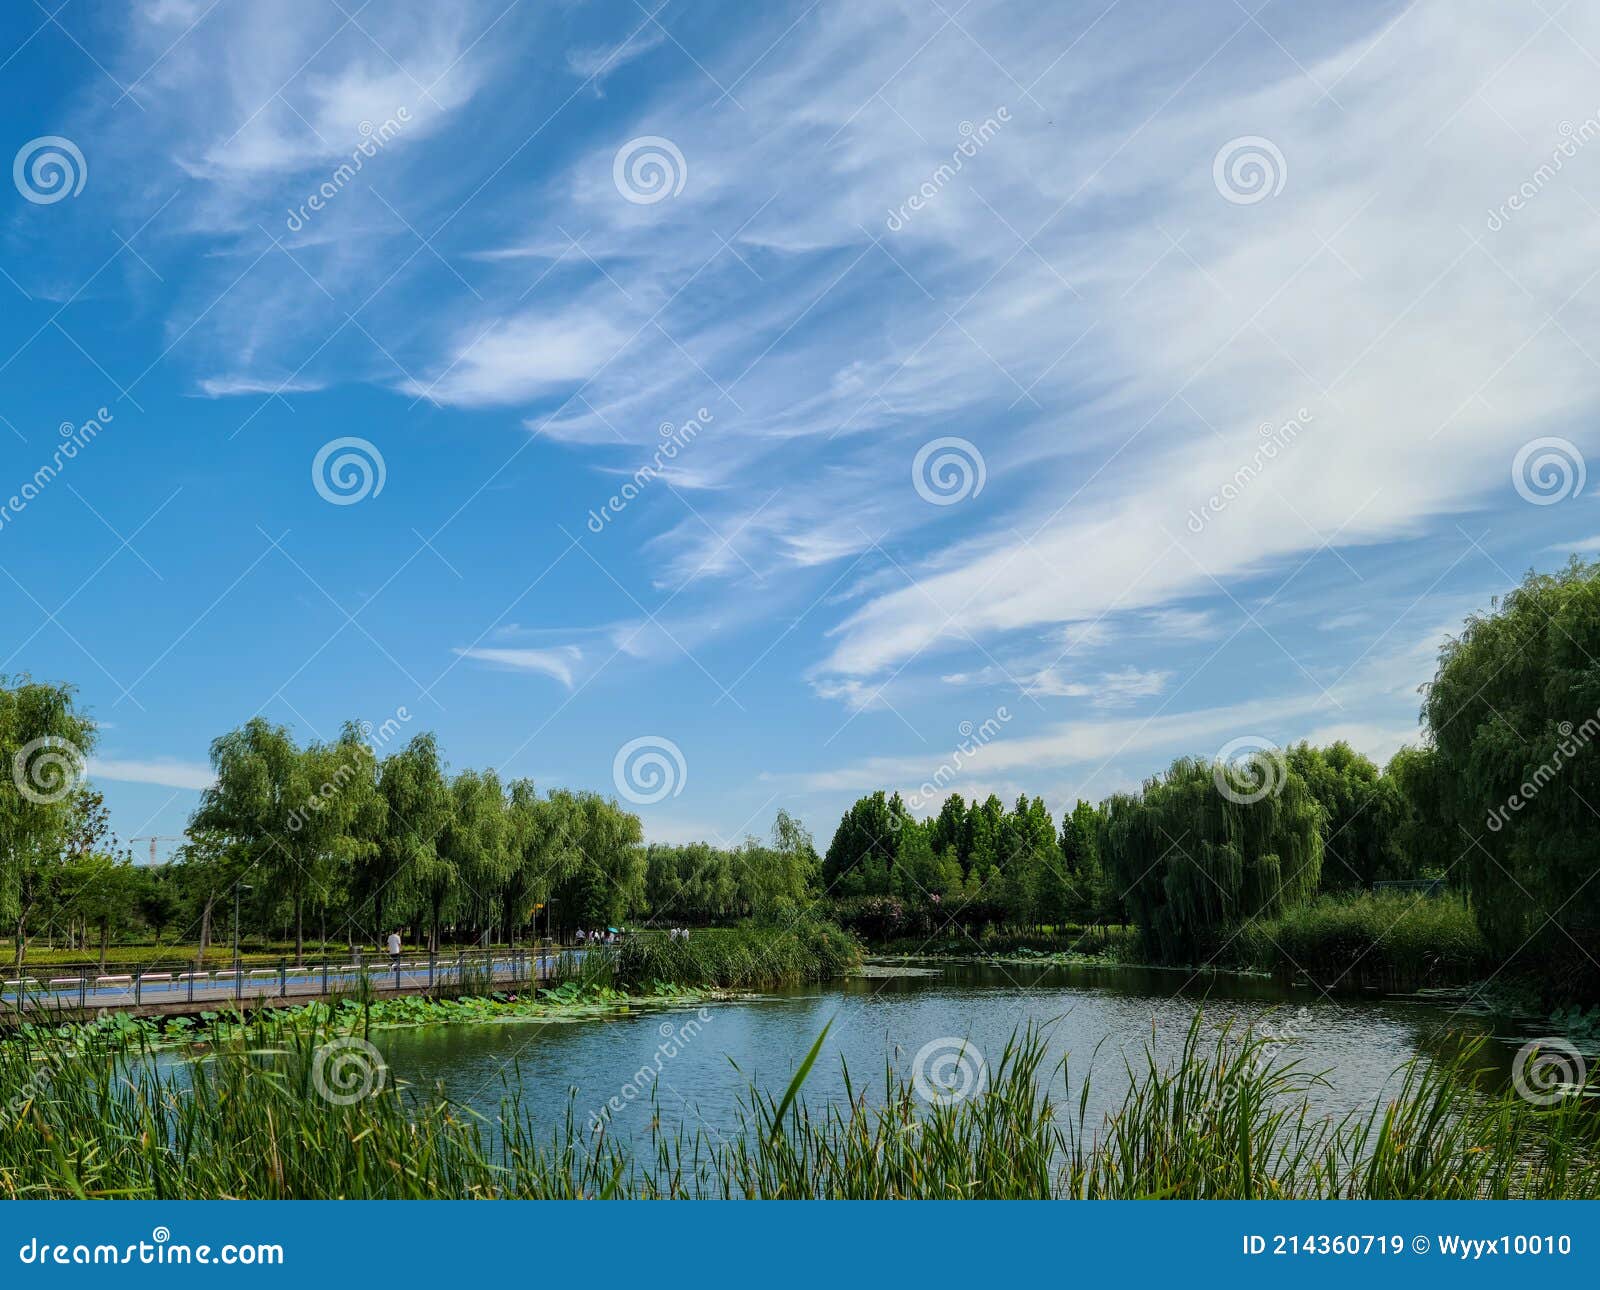 Ã¤Â¸Â­Ã¥âºÂ½Ã©ÆâÃ¥Â·Å¾Ã¥ÅâÃ©Â¾â¢Ã¦Â¹âÃ¦Â¹Â¿Ã¥ÅÂ°Ã¥â¦Â¬Ã¥âºÂ­ beilonghu wetland park, zhengzhou, china